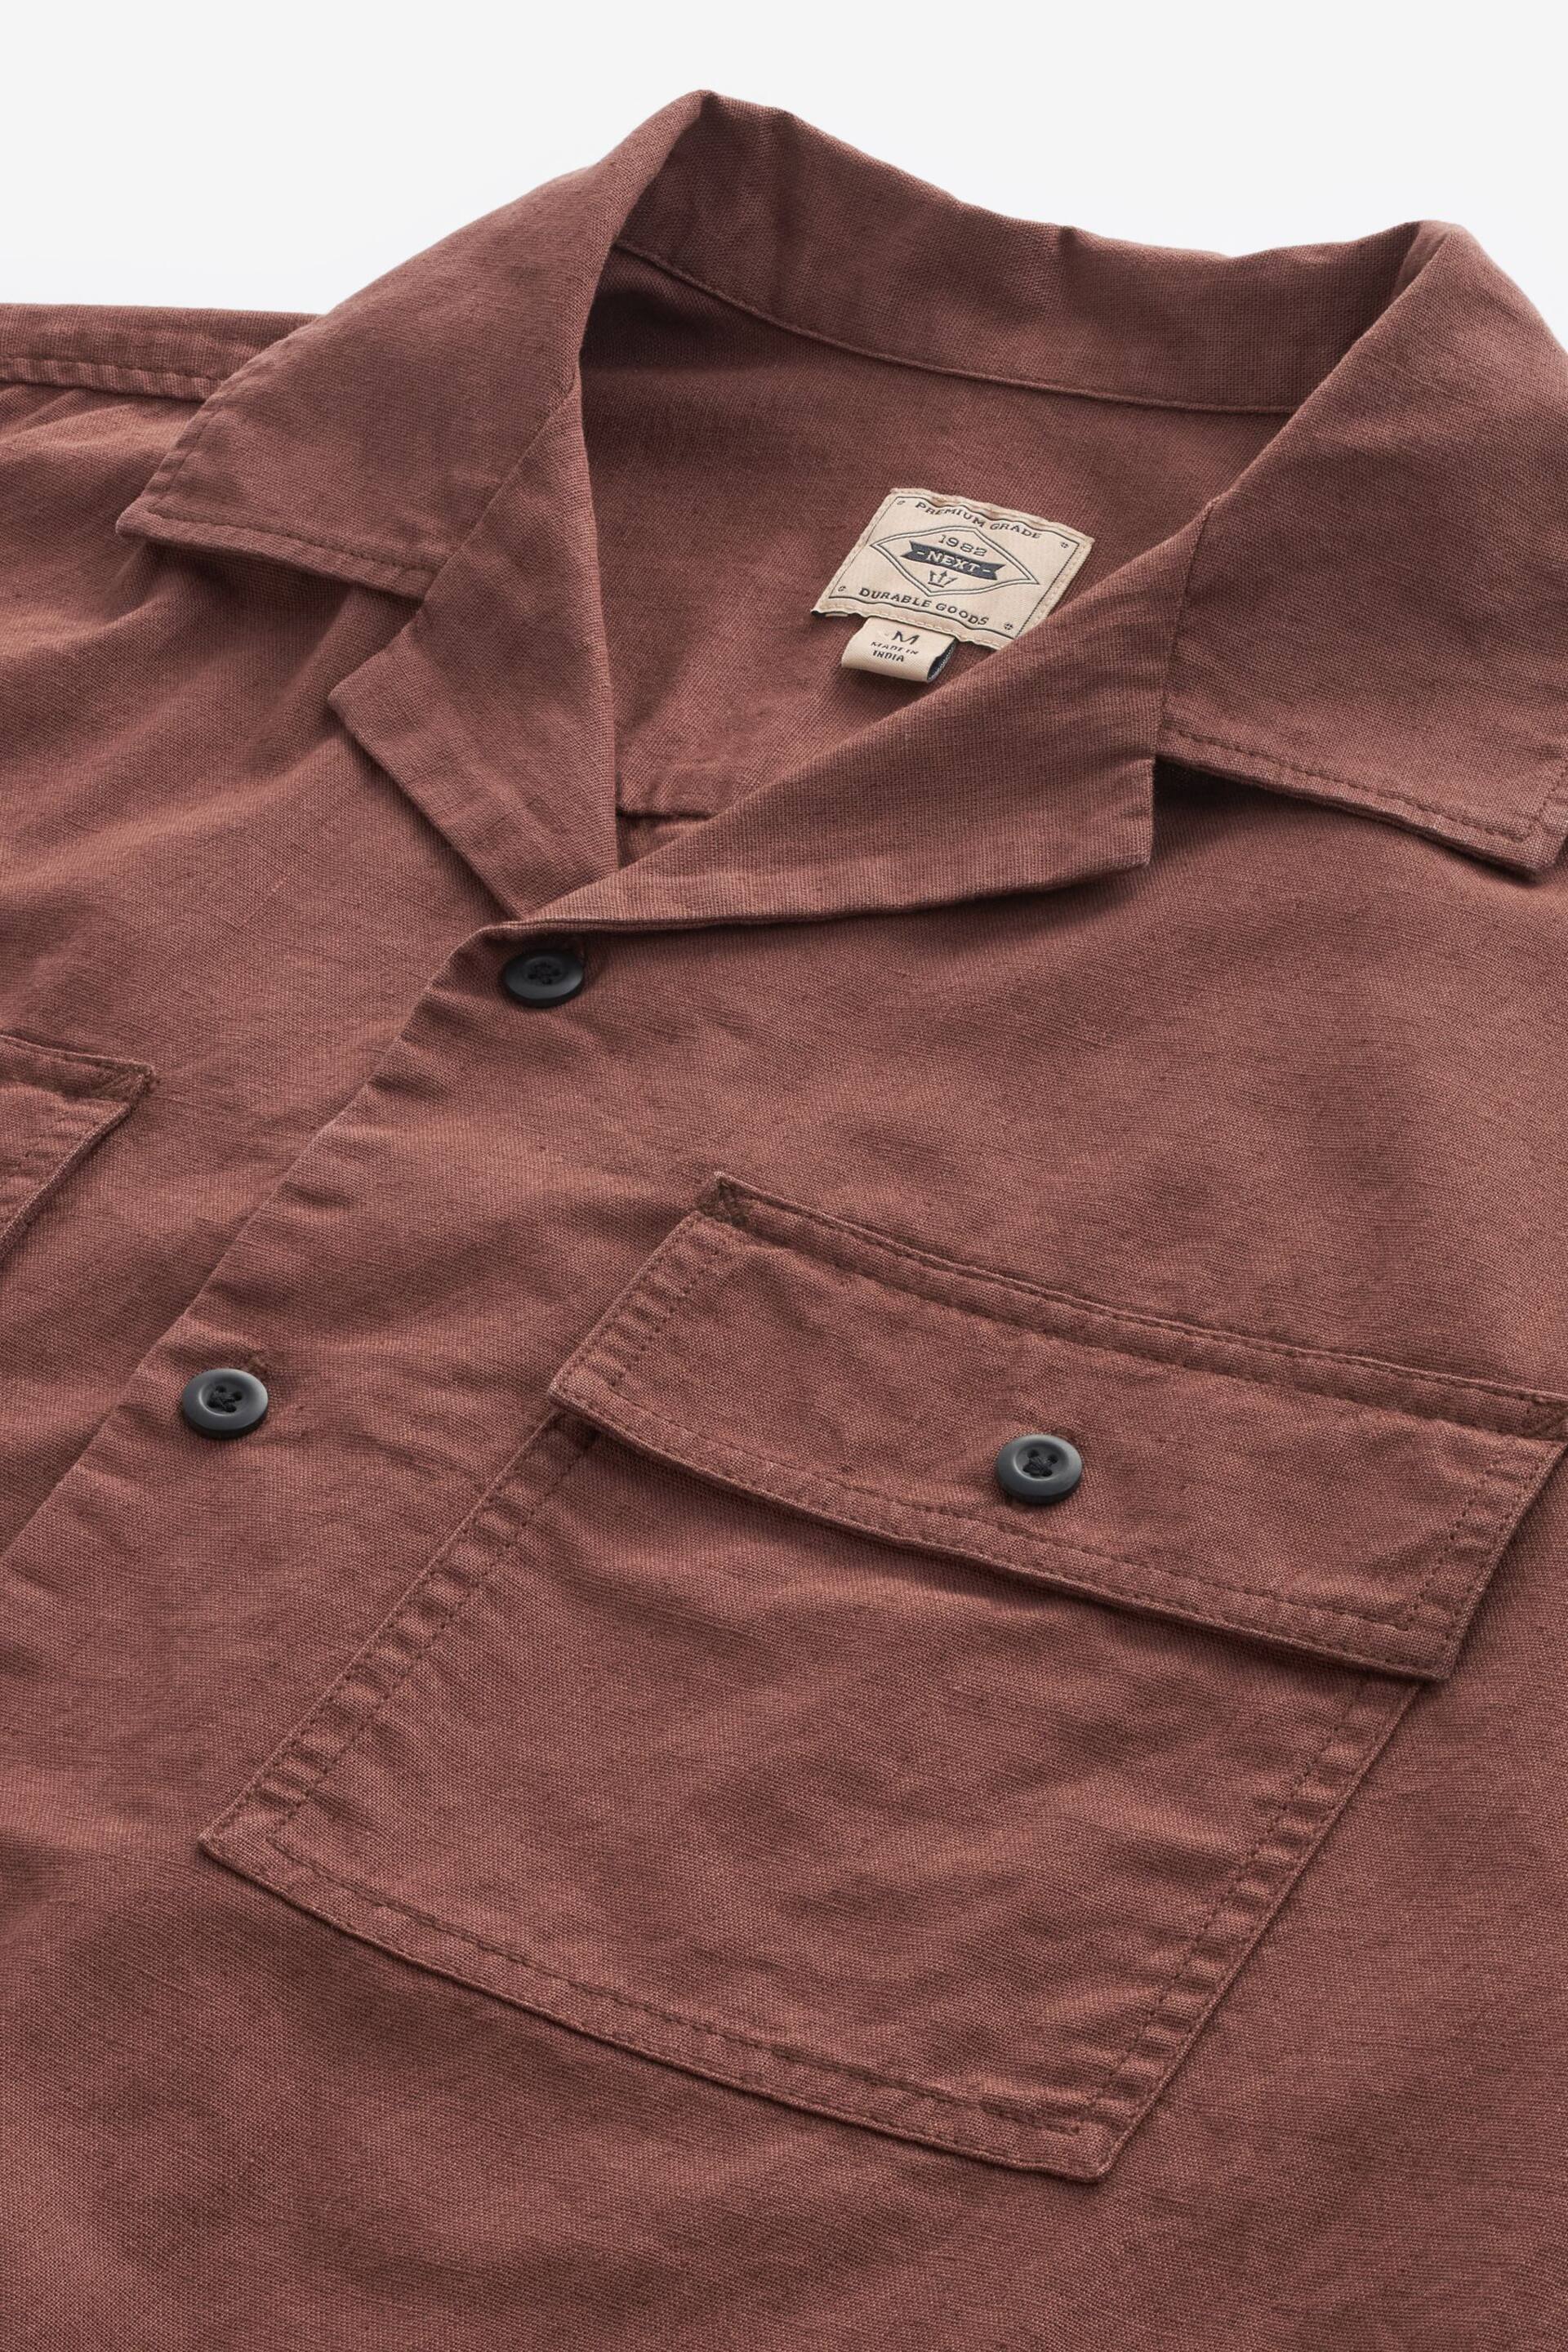 Rust Brown Linen Blend Short Sleeve Shirt with Cuban Collar - Image 7 of 9